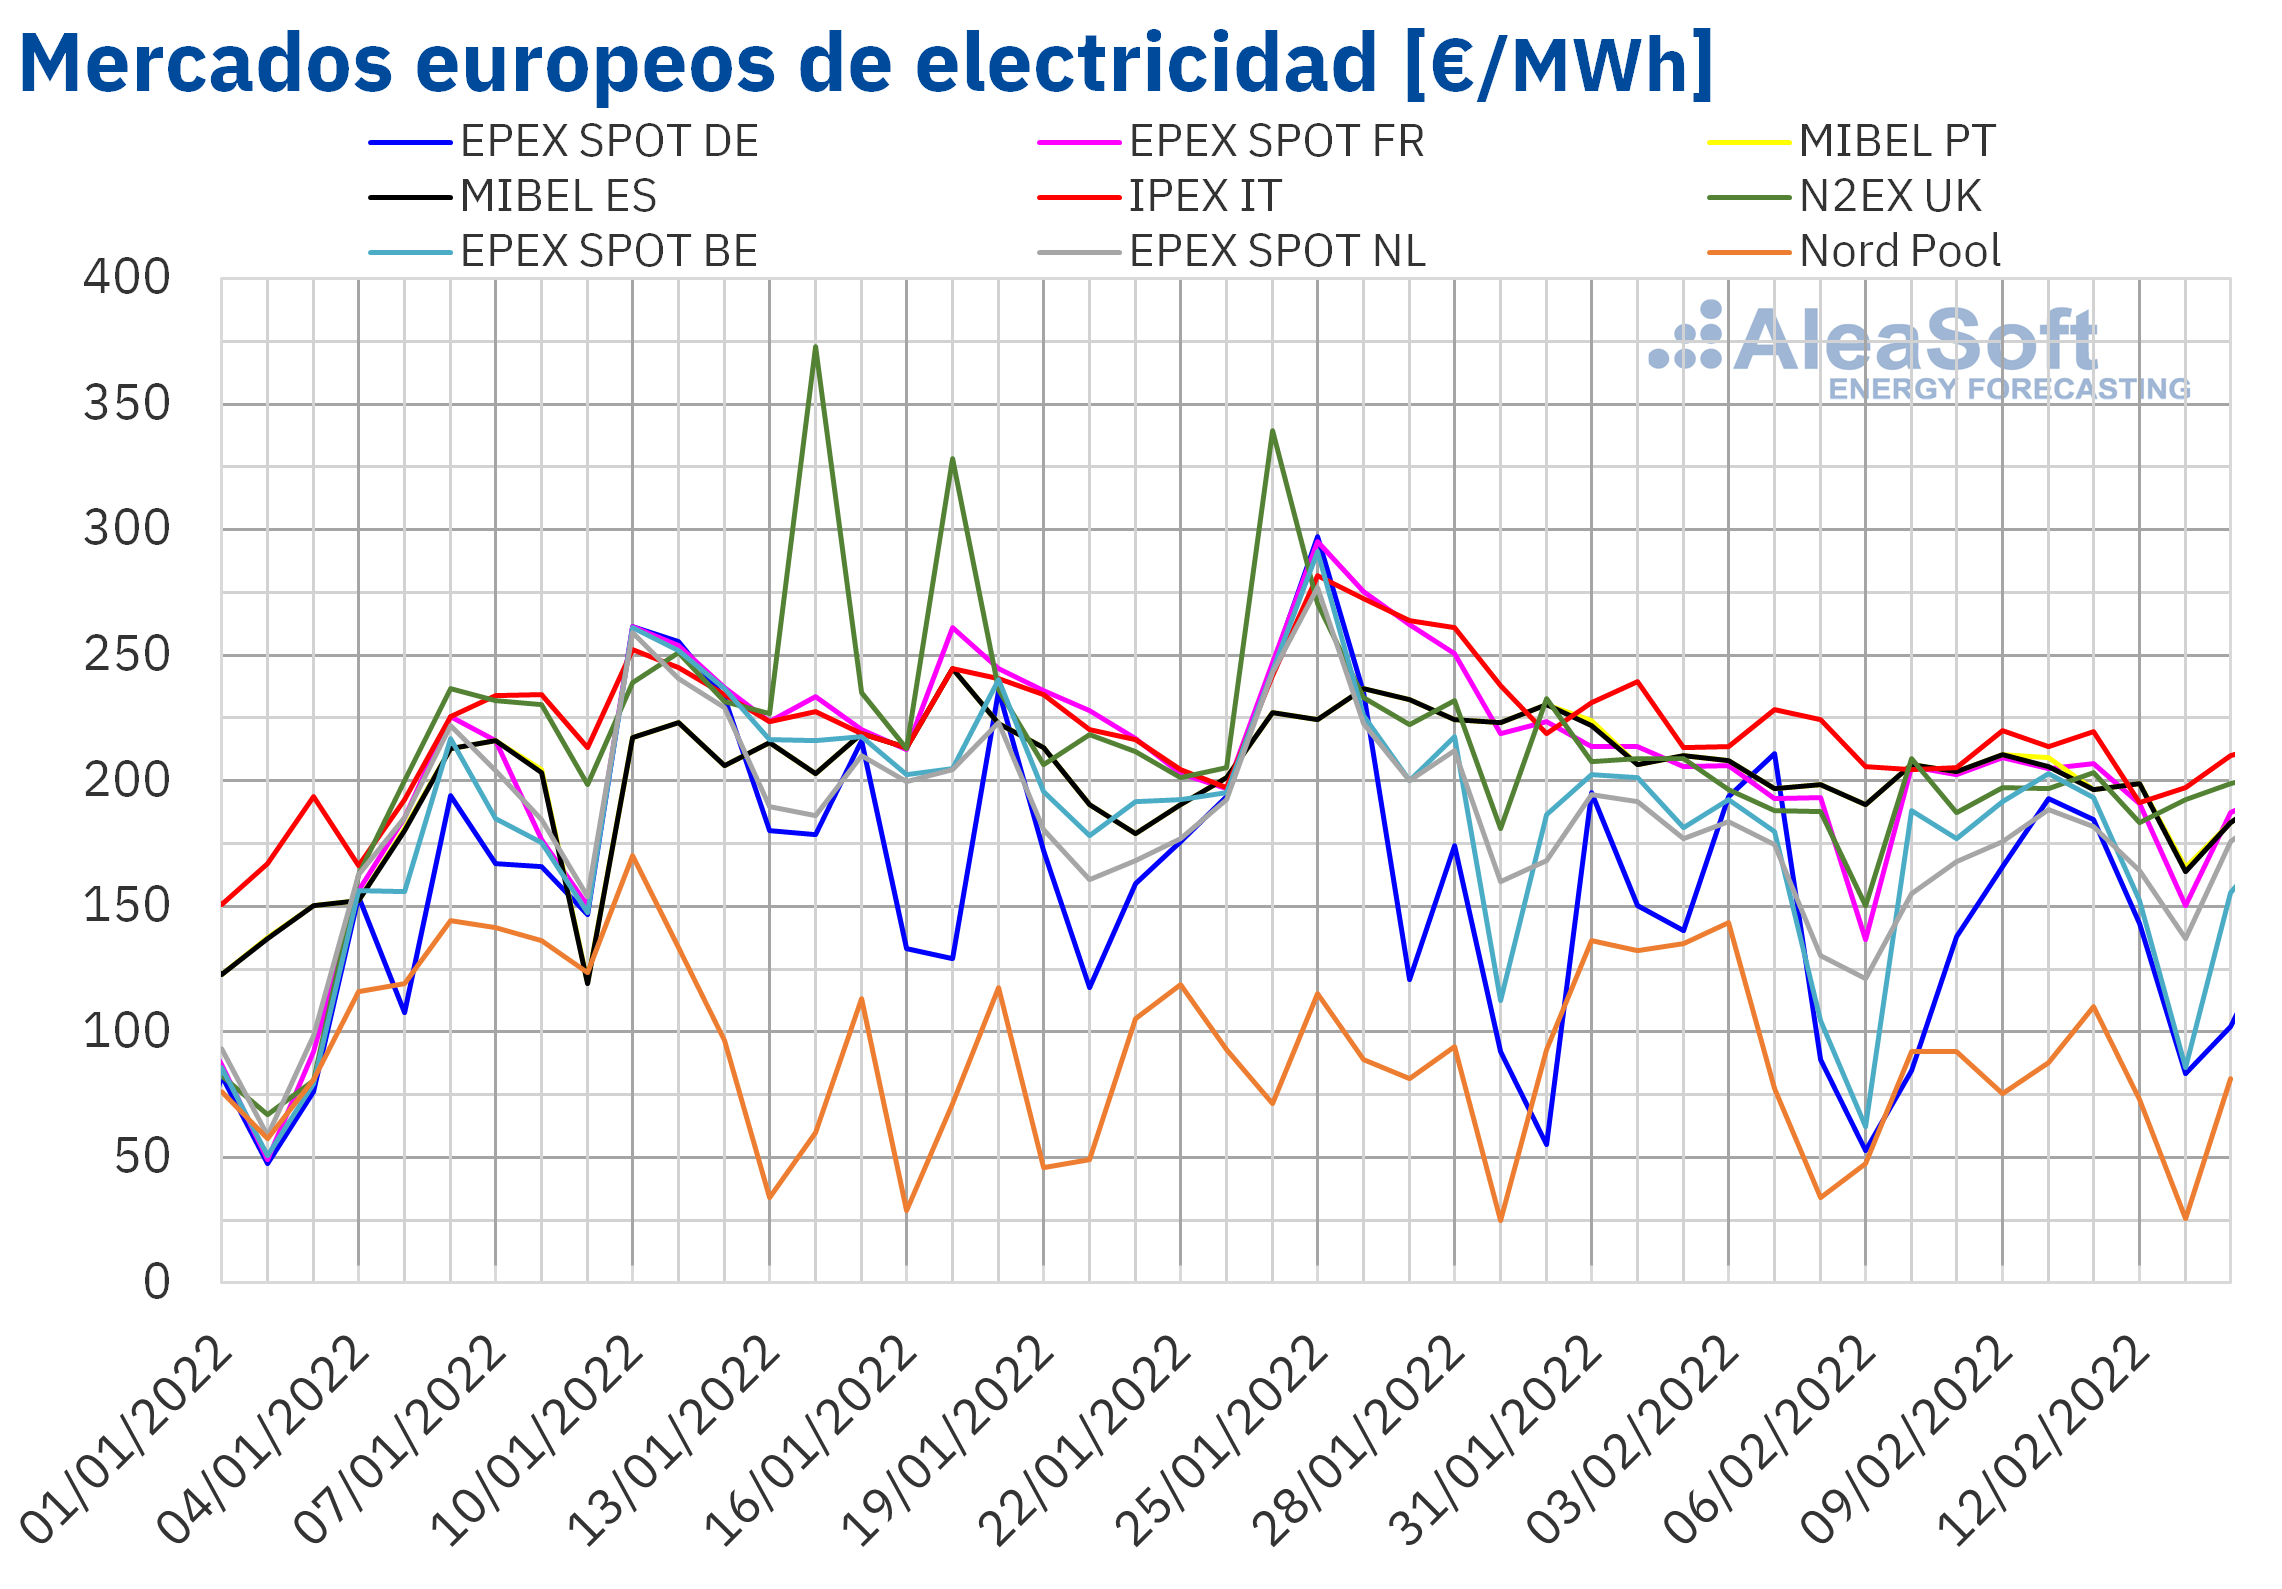 AleaSoft: Mercados europeos a la baja en la segunda semana de febrero gracias a solar y a precios del gas